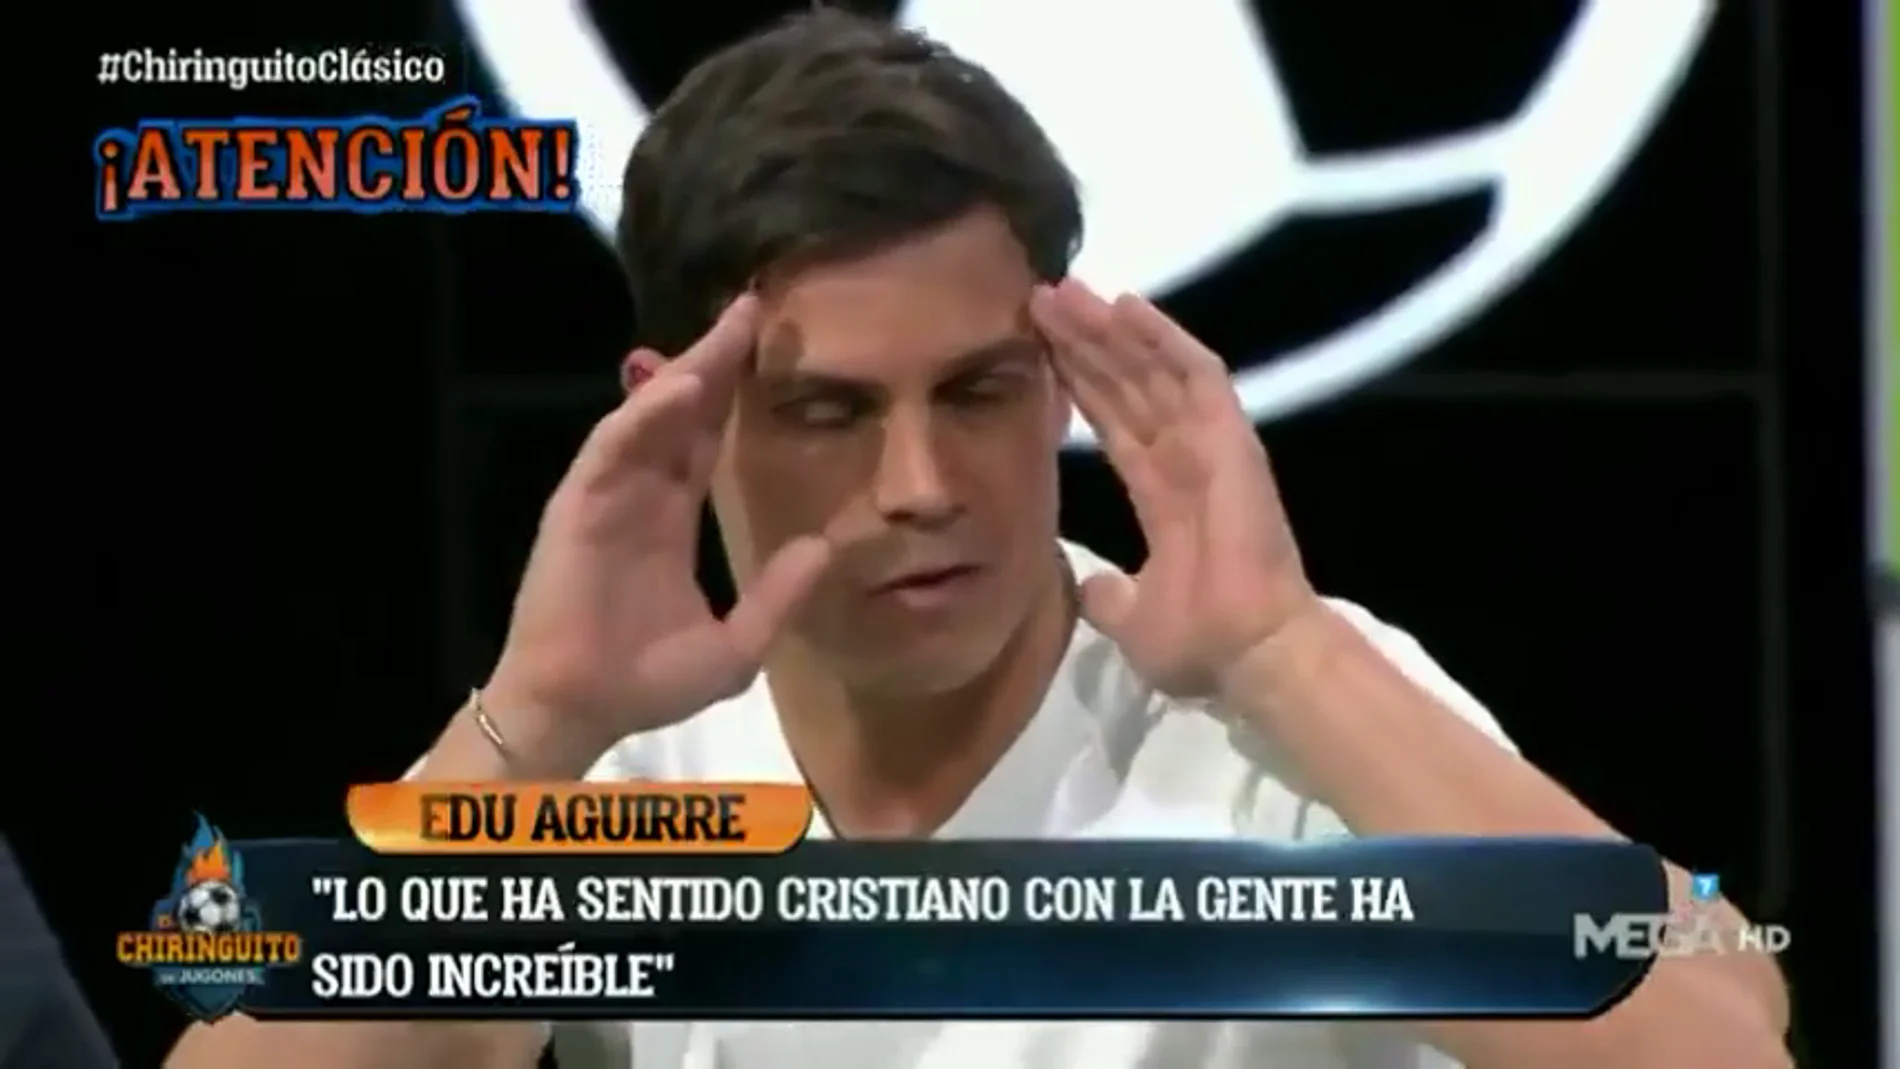 Bombazo de Edu Aguirre: "Cristiano ha sentido ganas de volver al Madrid"